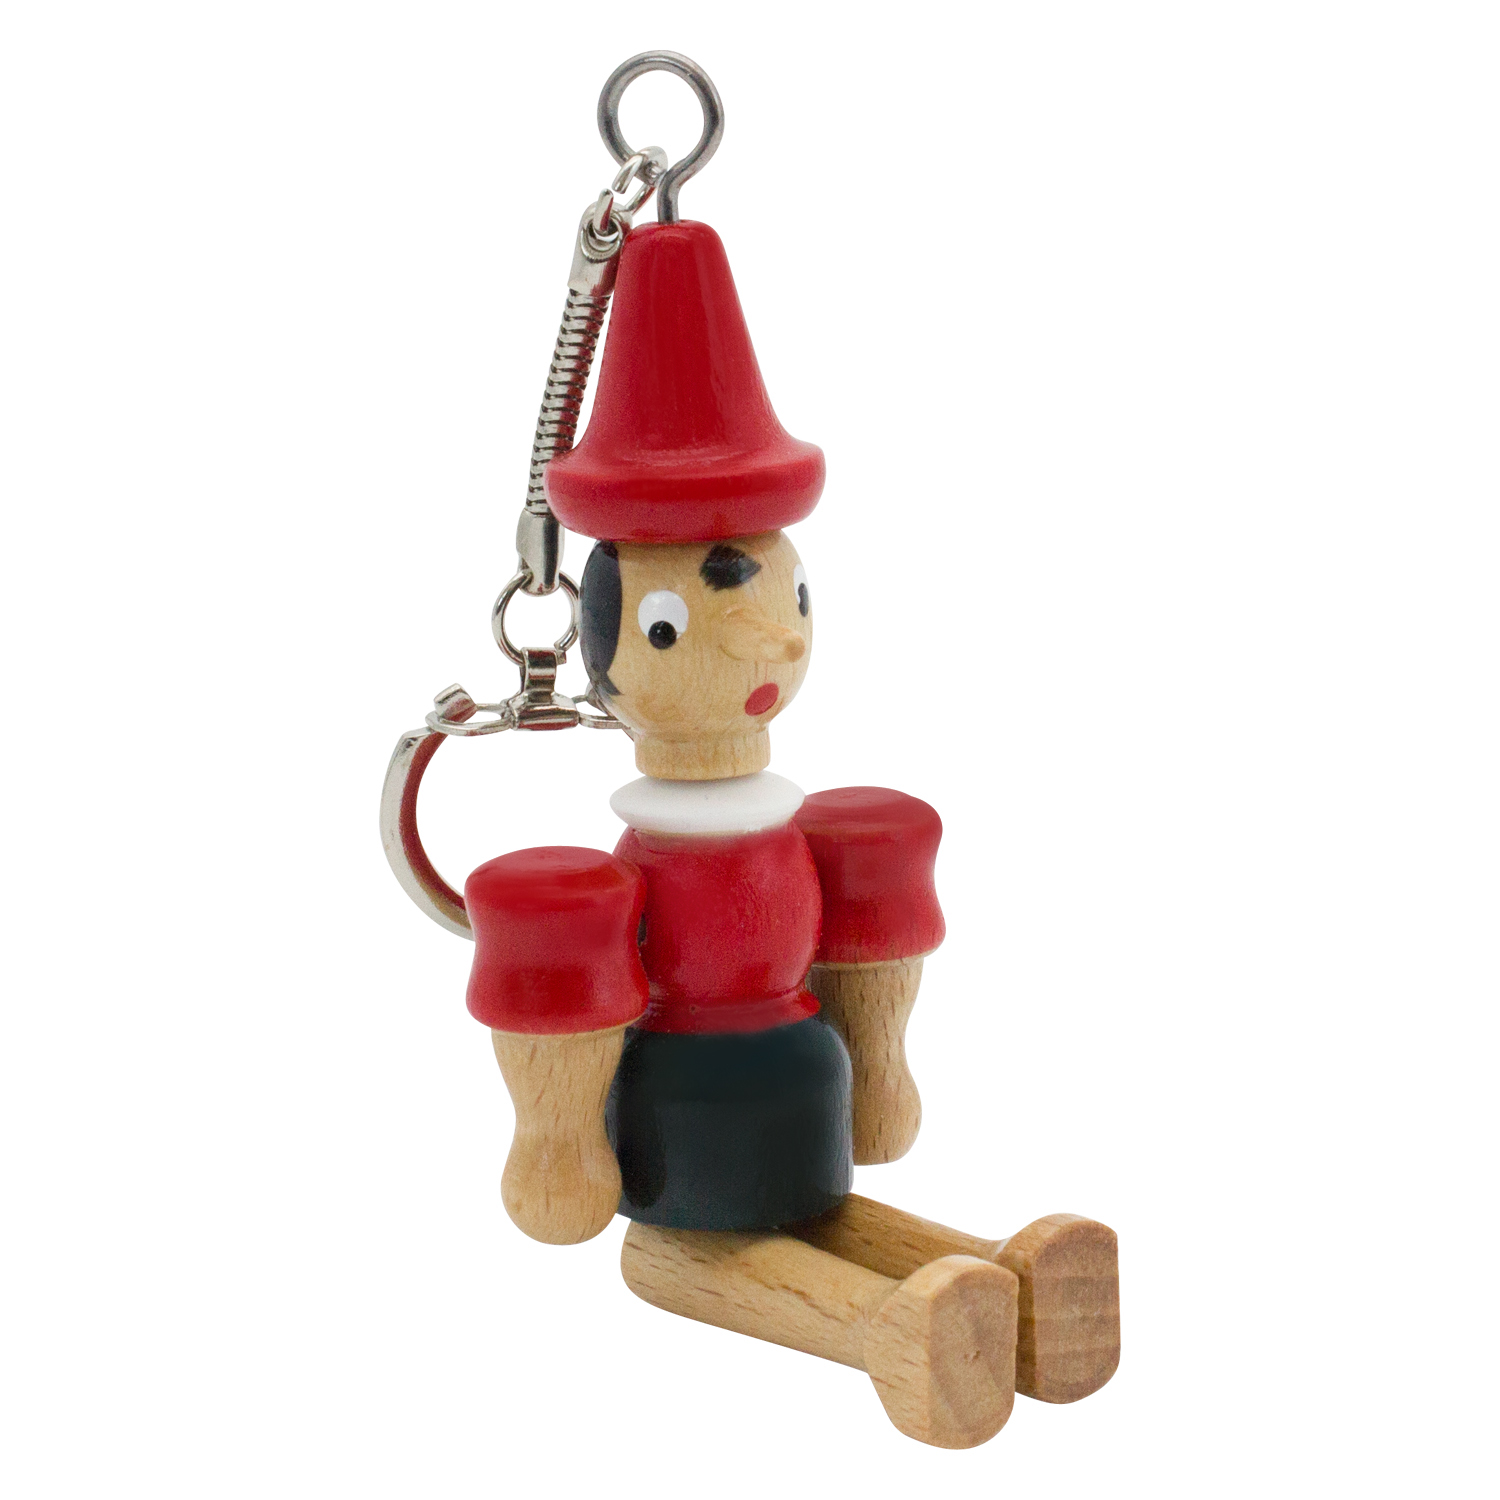 Pinocchio aus Holz, 10 cm, Schlüsselanhänger - 9029